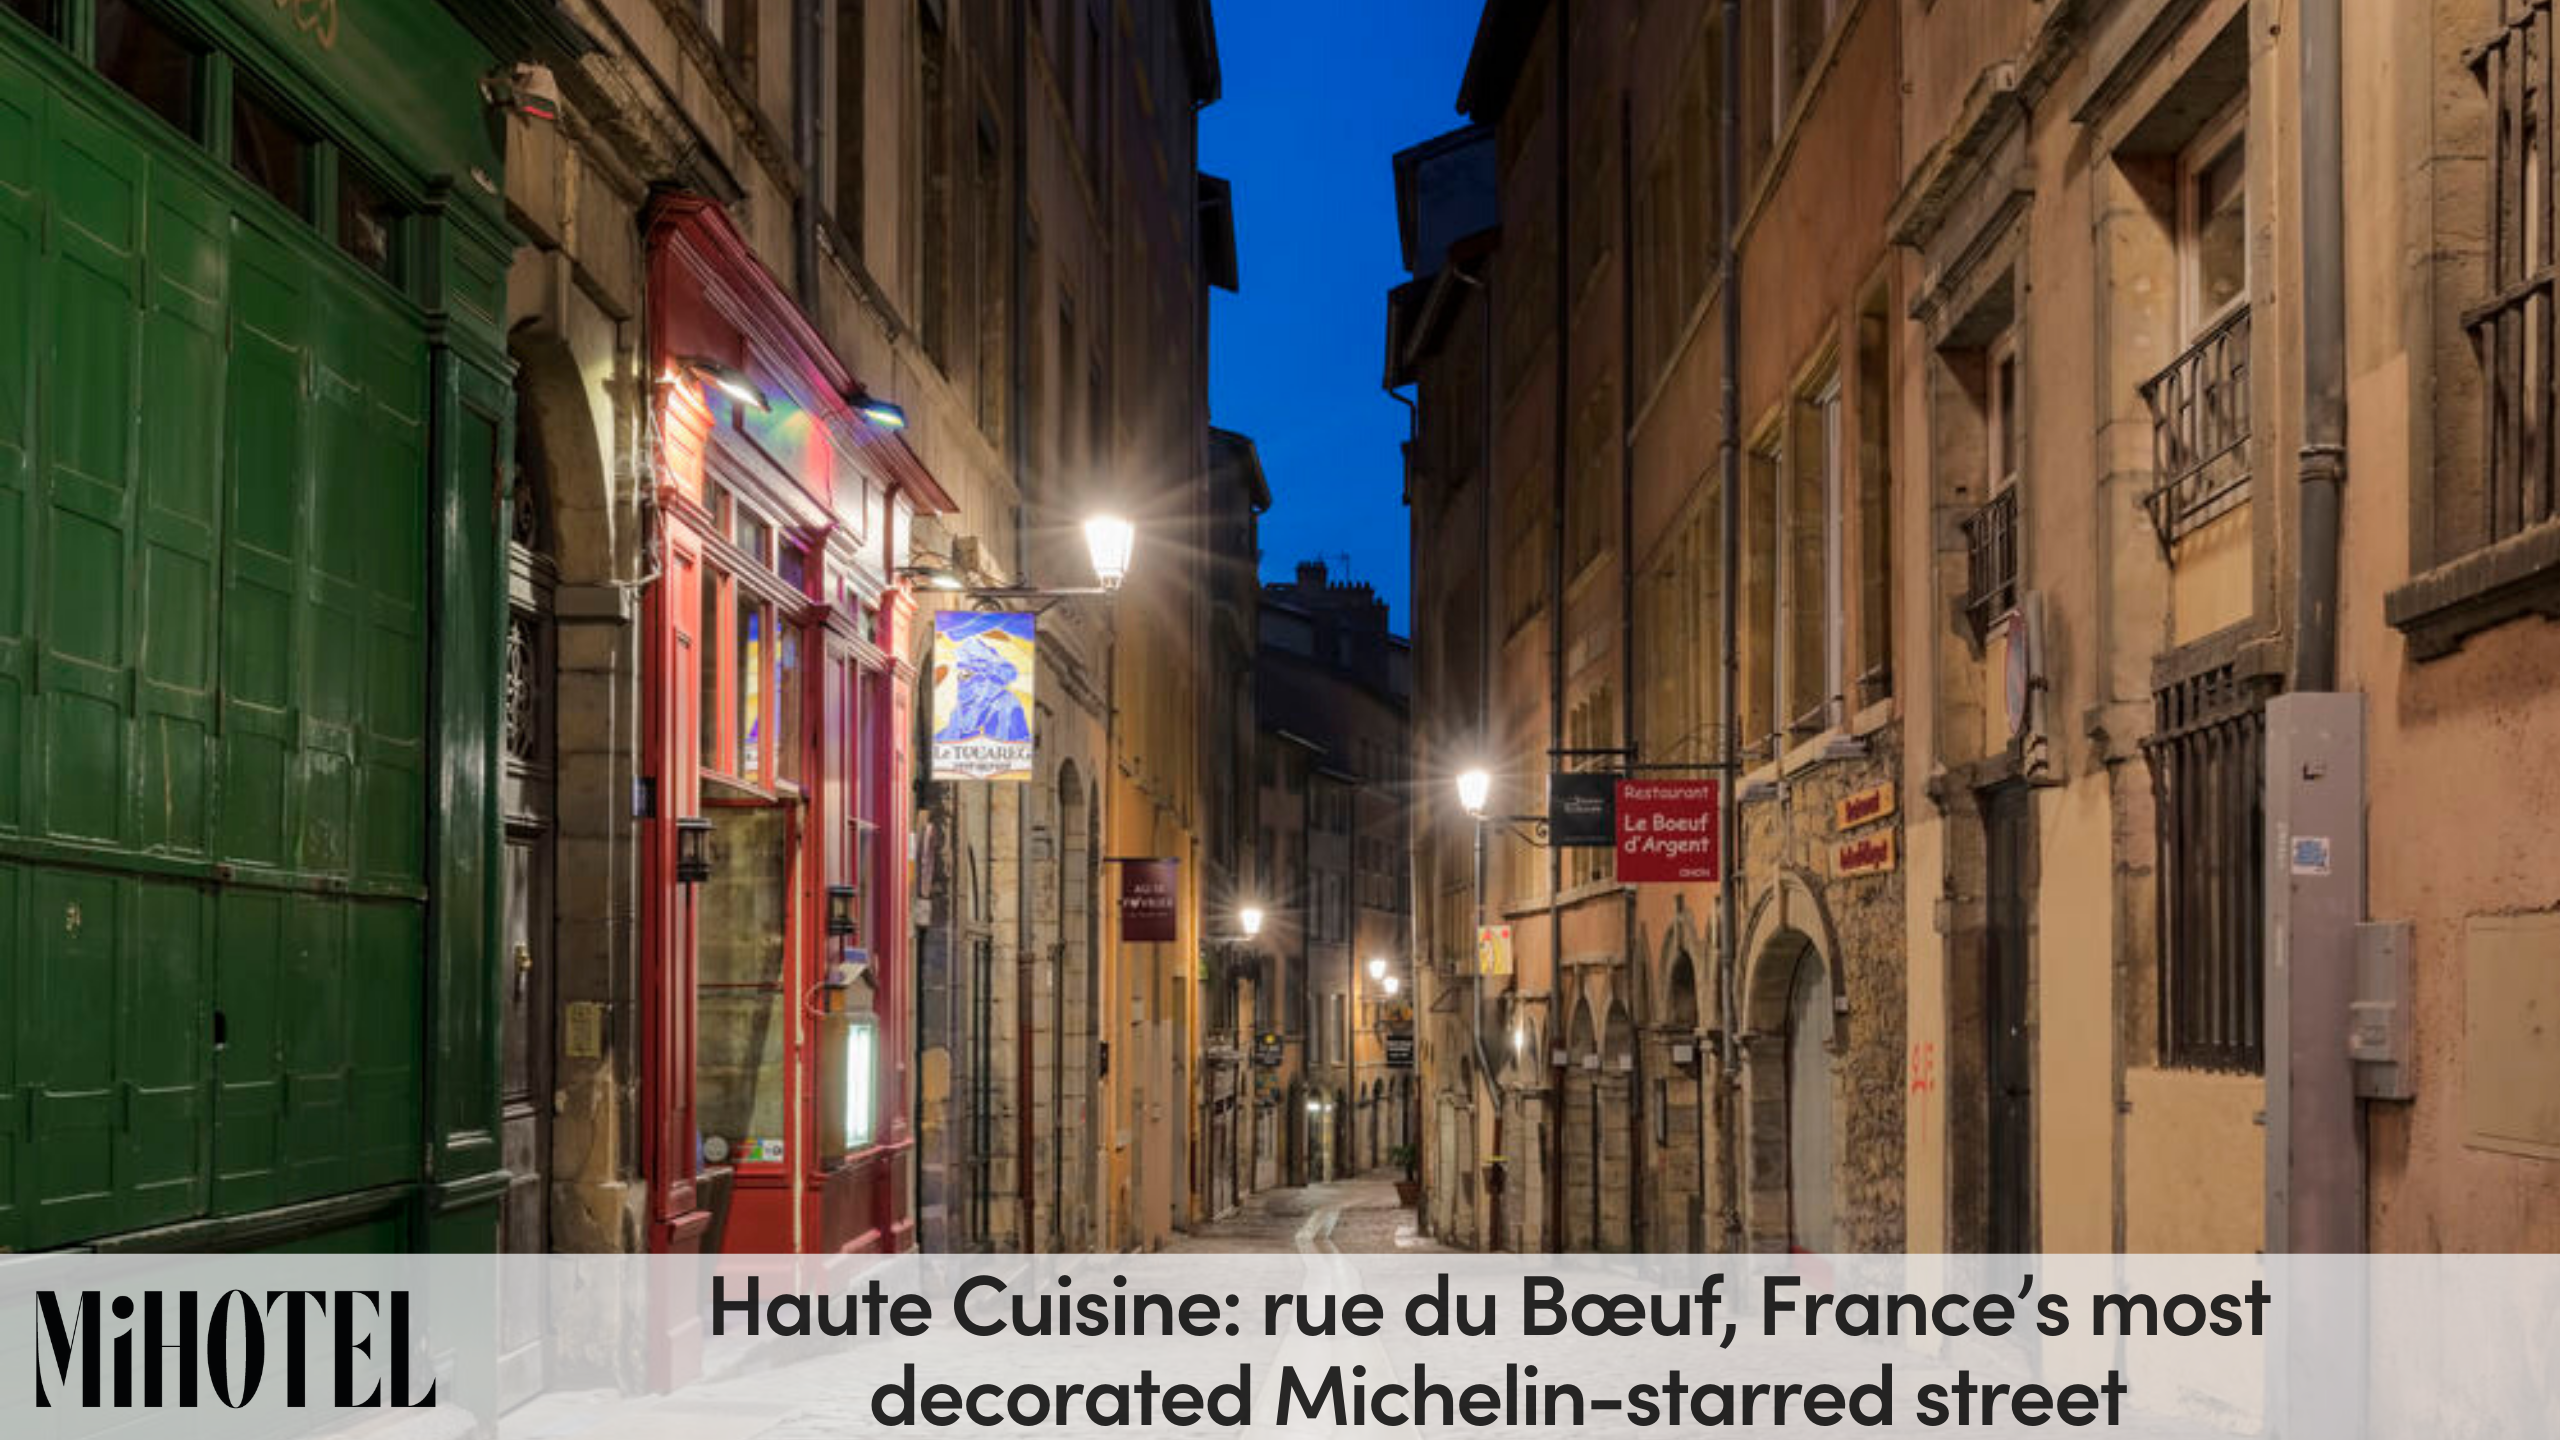 rue-du-boeuf-michelin-starred-street